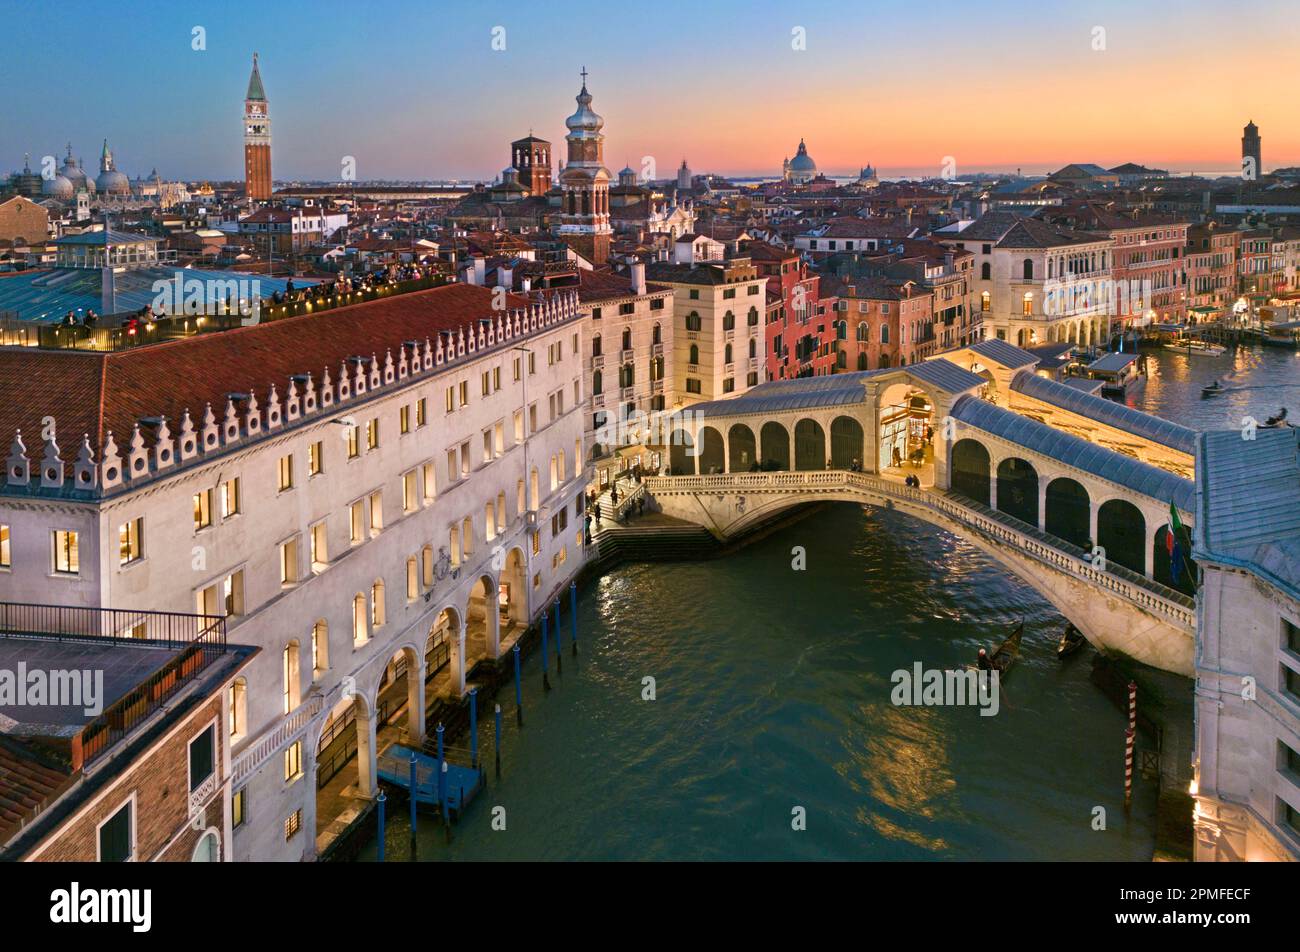 L'Italie, la Vénétie, Venise, classée au patrimoine mondial de l'UNESCO, le Grand Canal, le pont du Rialto et la Fondaco dei Tedeschi Banque D'Images